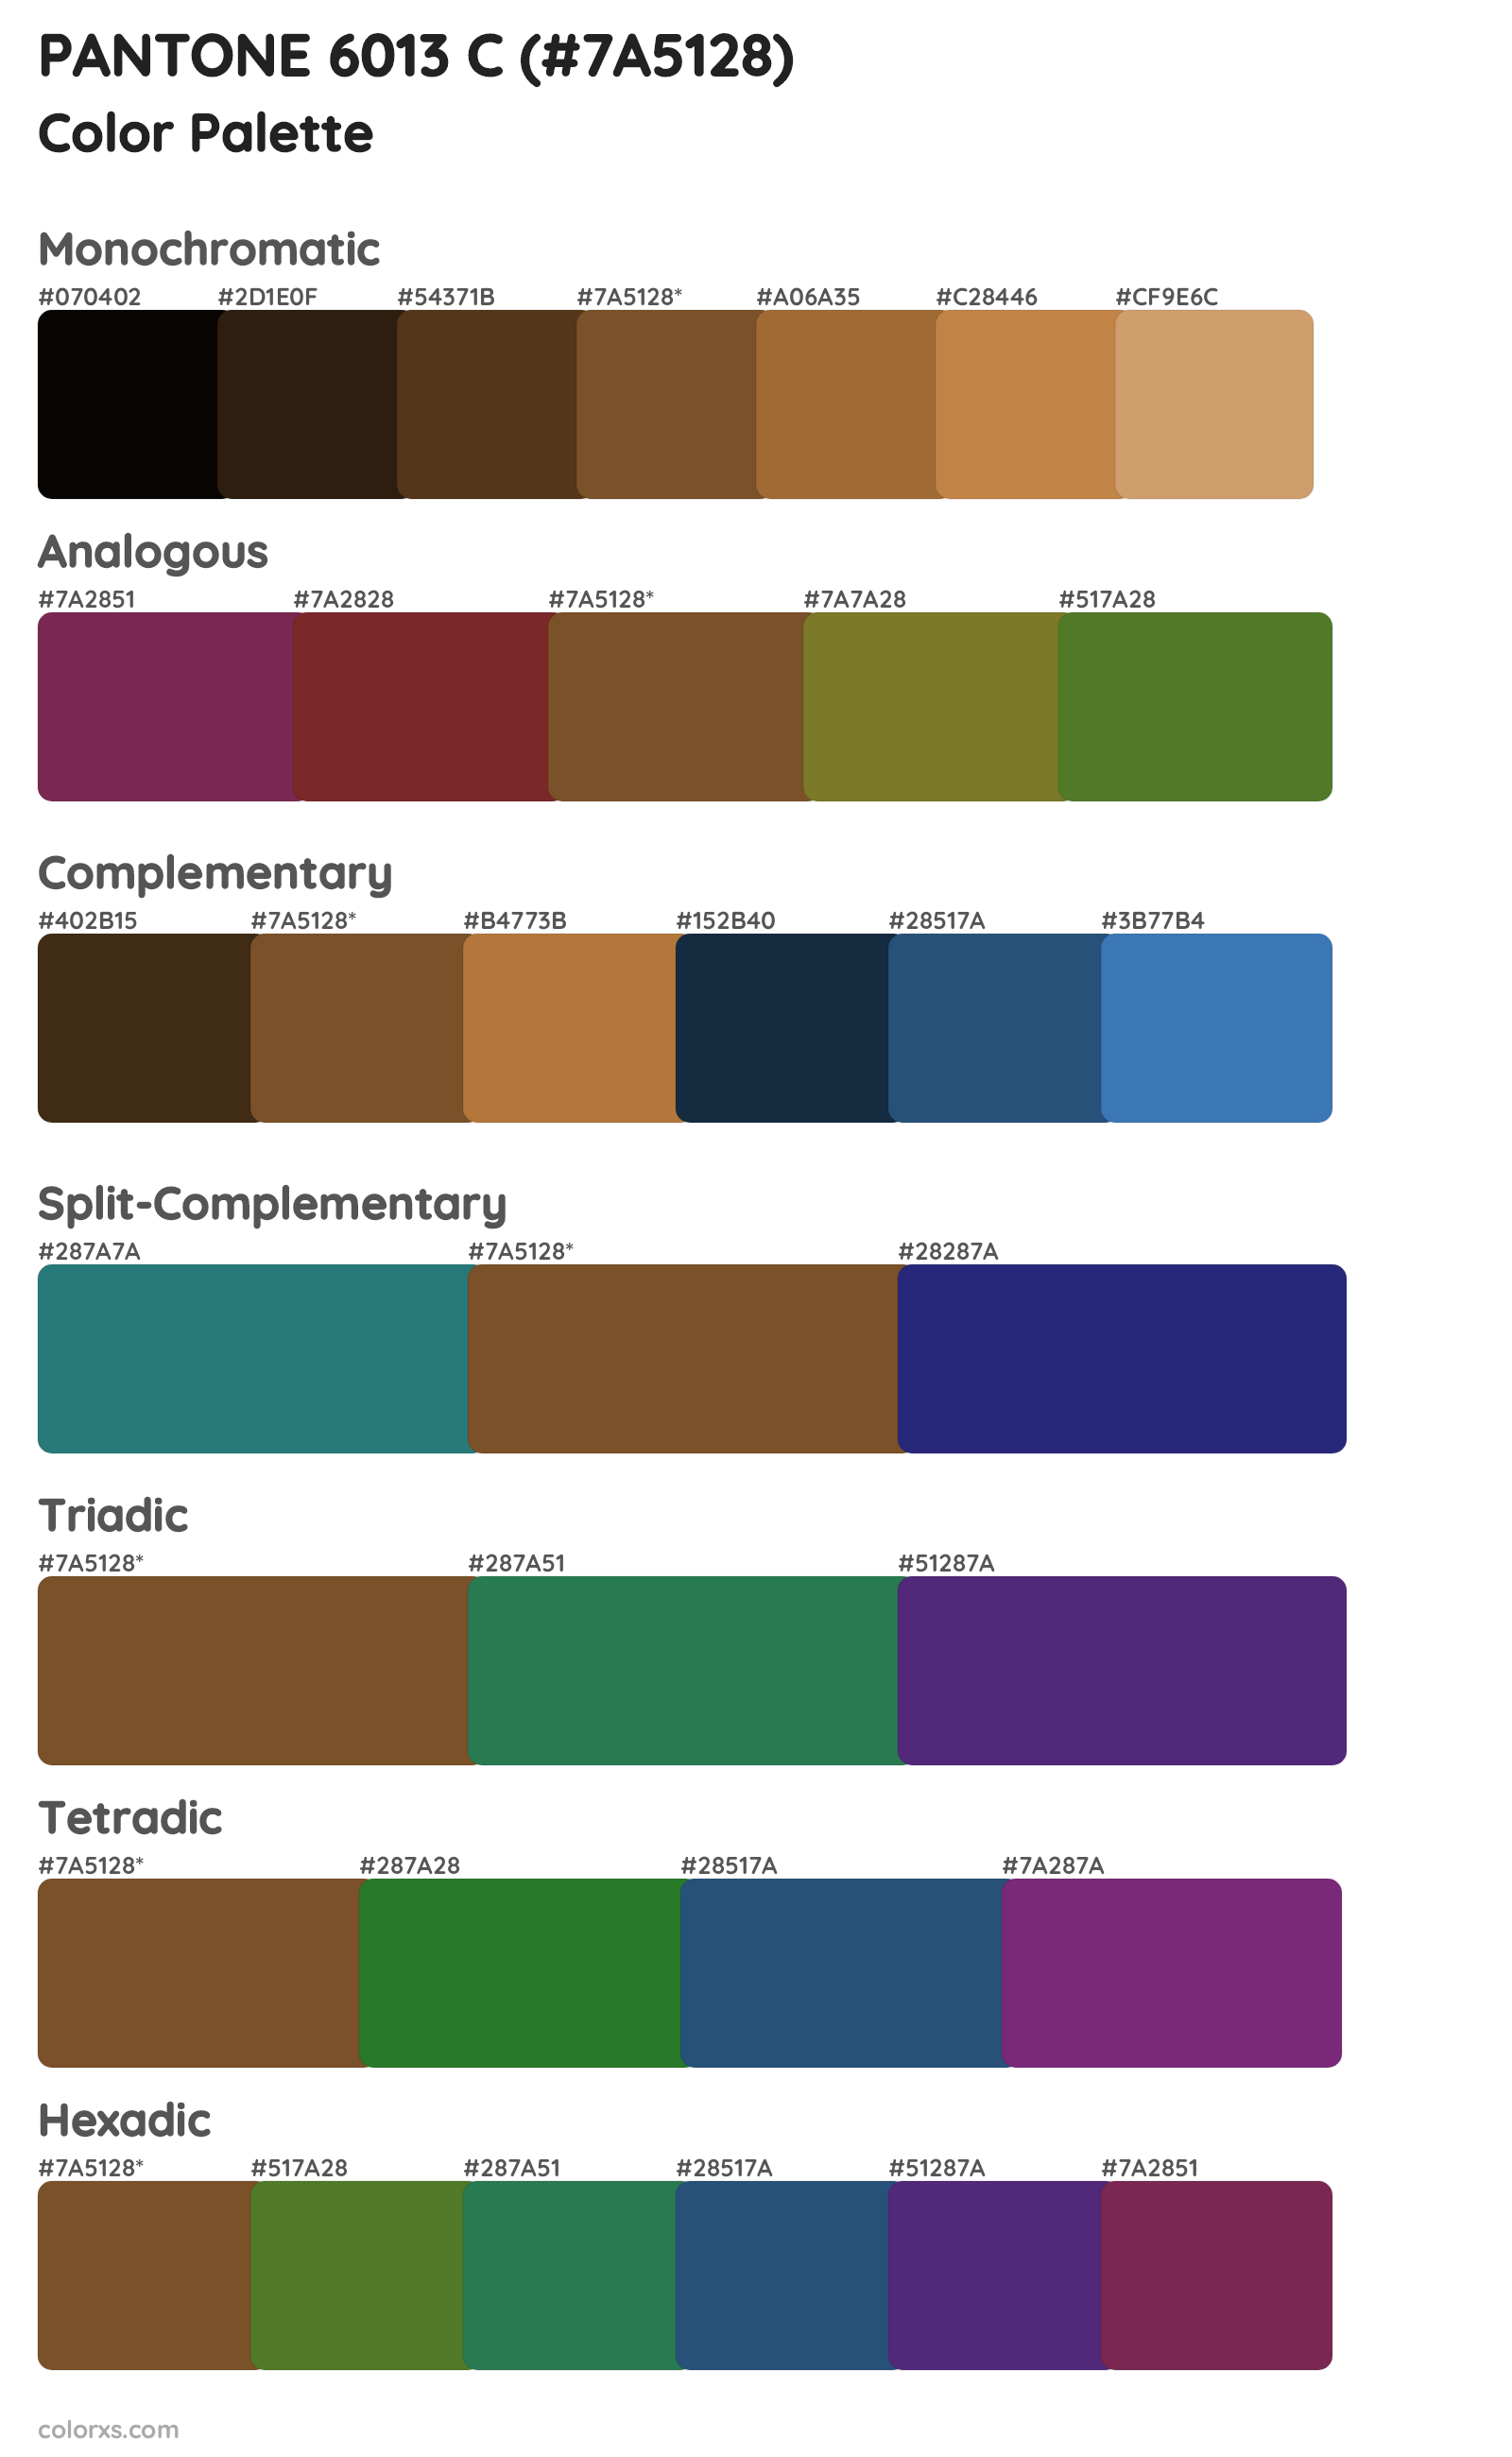 PANTONE 6013 C Color Scheme Palettes